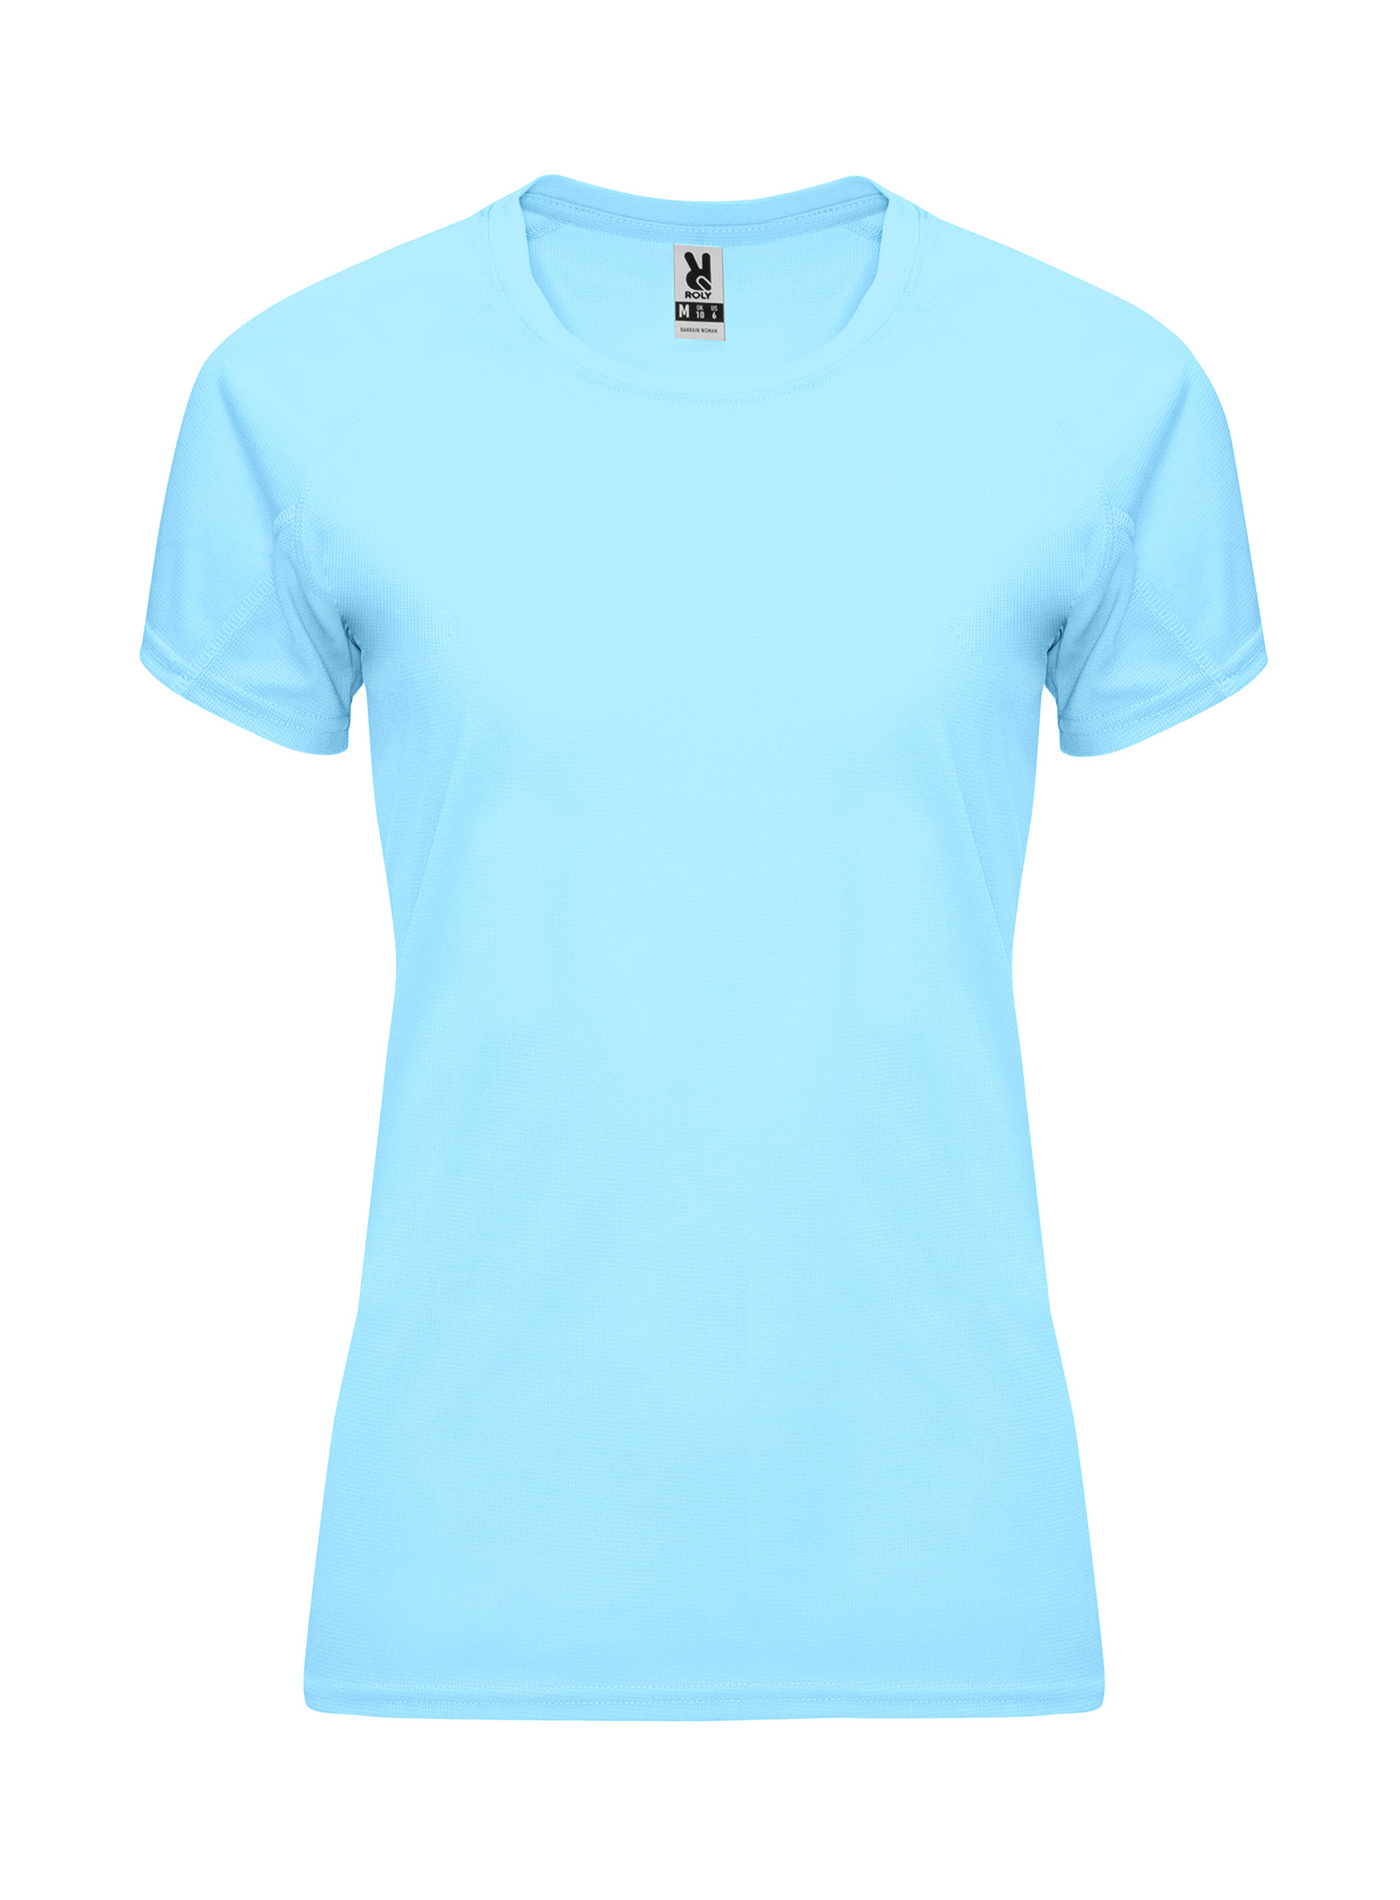 Dámské sportovní tričko Roly Bahrain - Blankytně modrá L